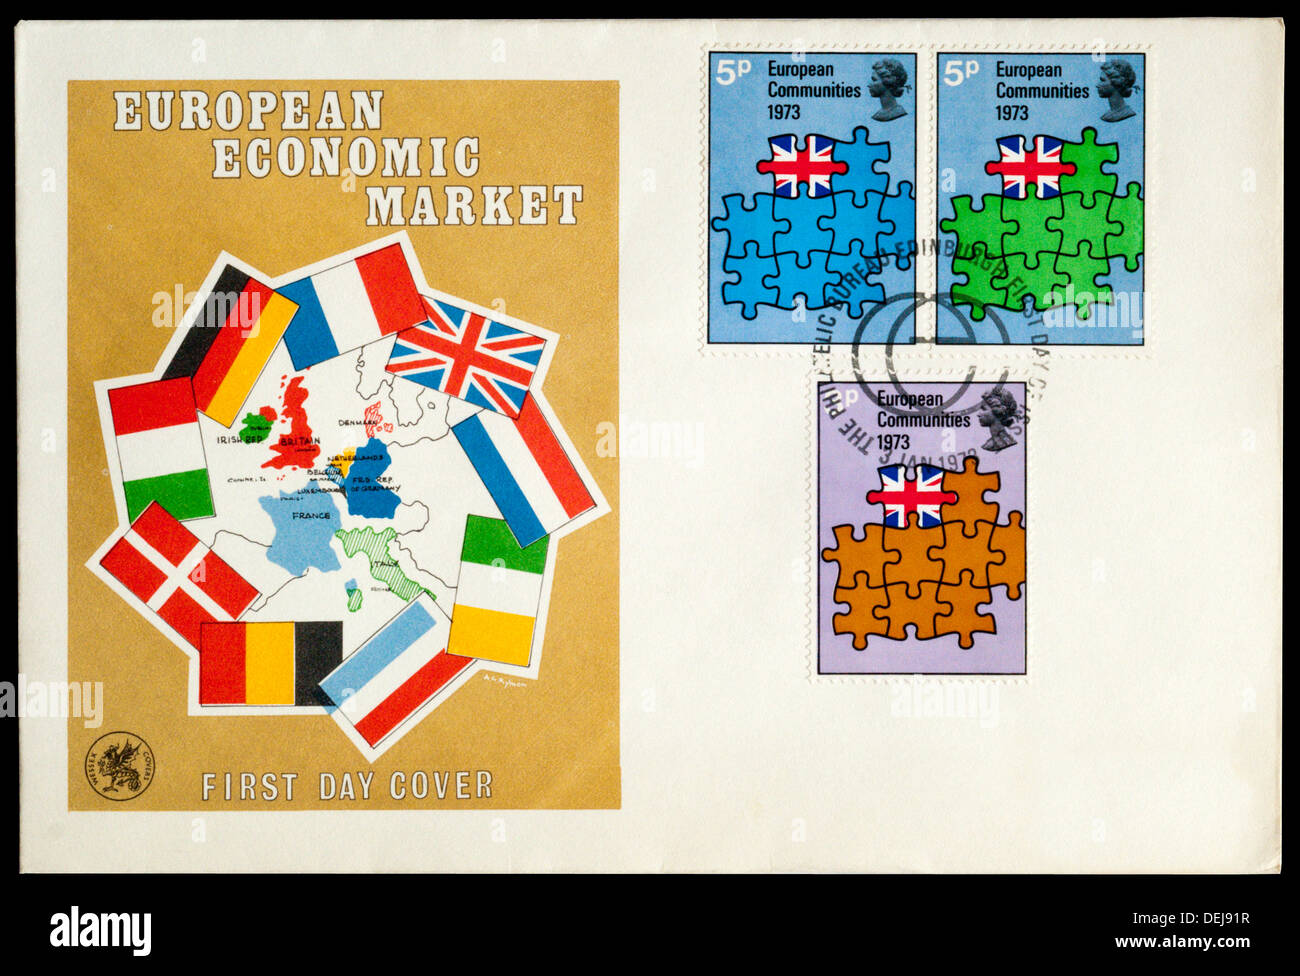 Primo giorno coprire celebra il mercato economico europeo. Foto Stock